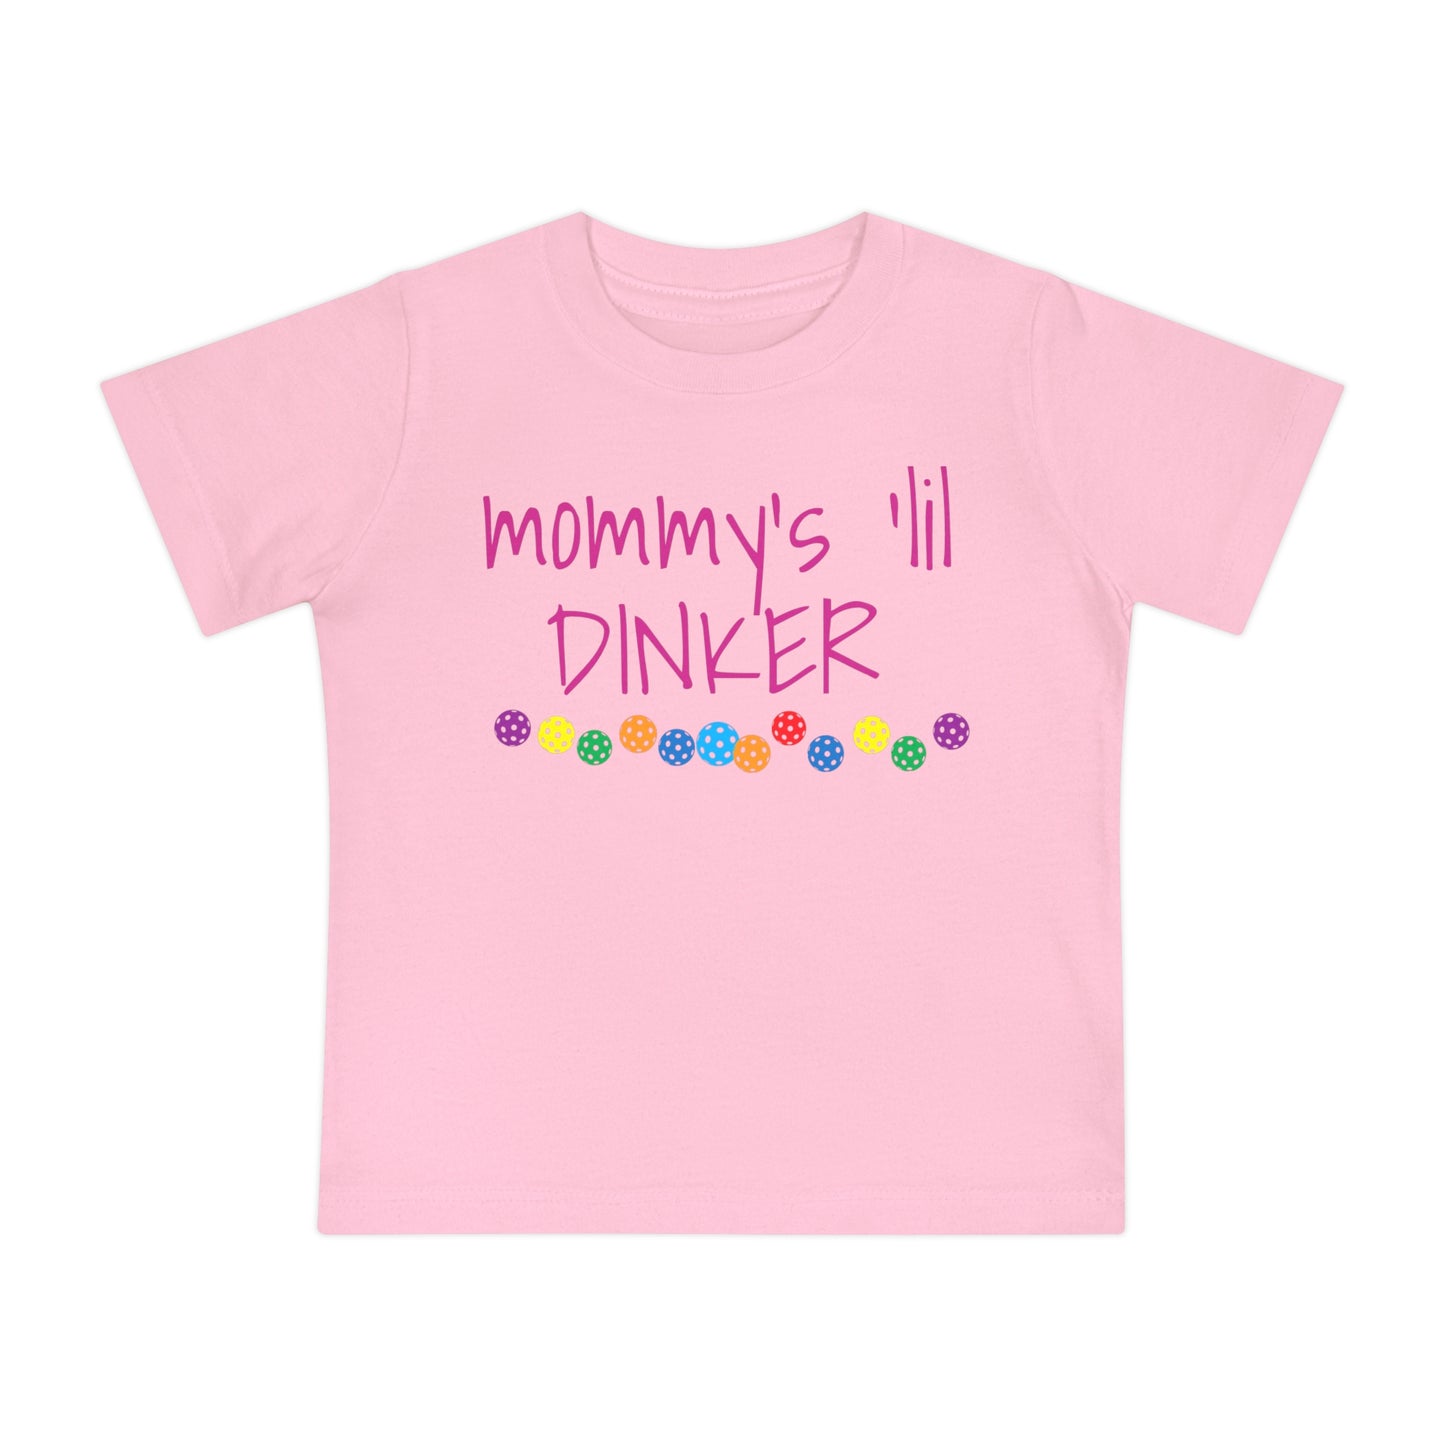 Pickleball Baby Short Sleeve T-Shirt - Mommy's 'lil dinker